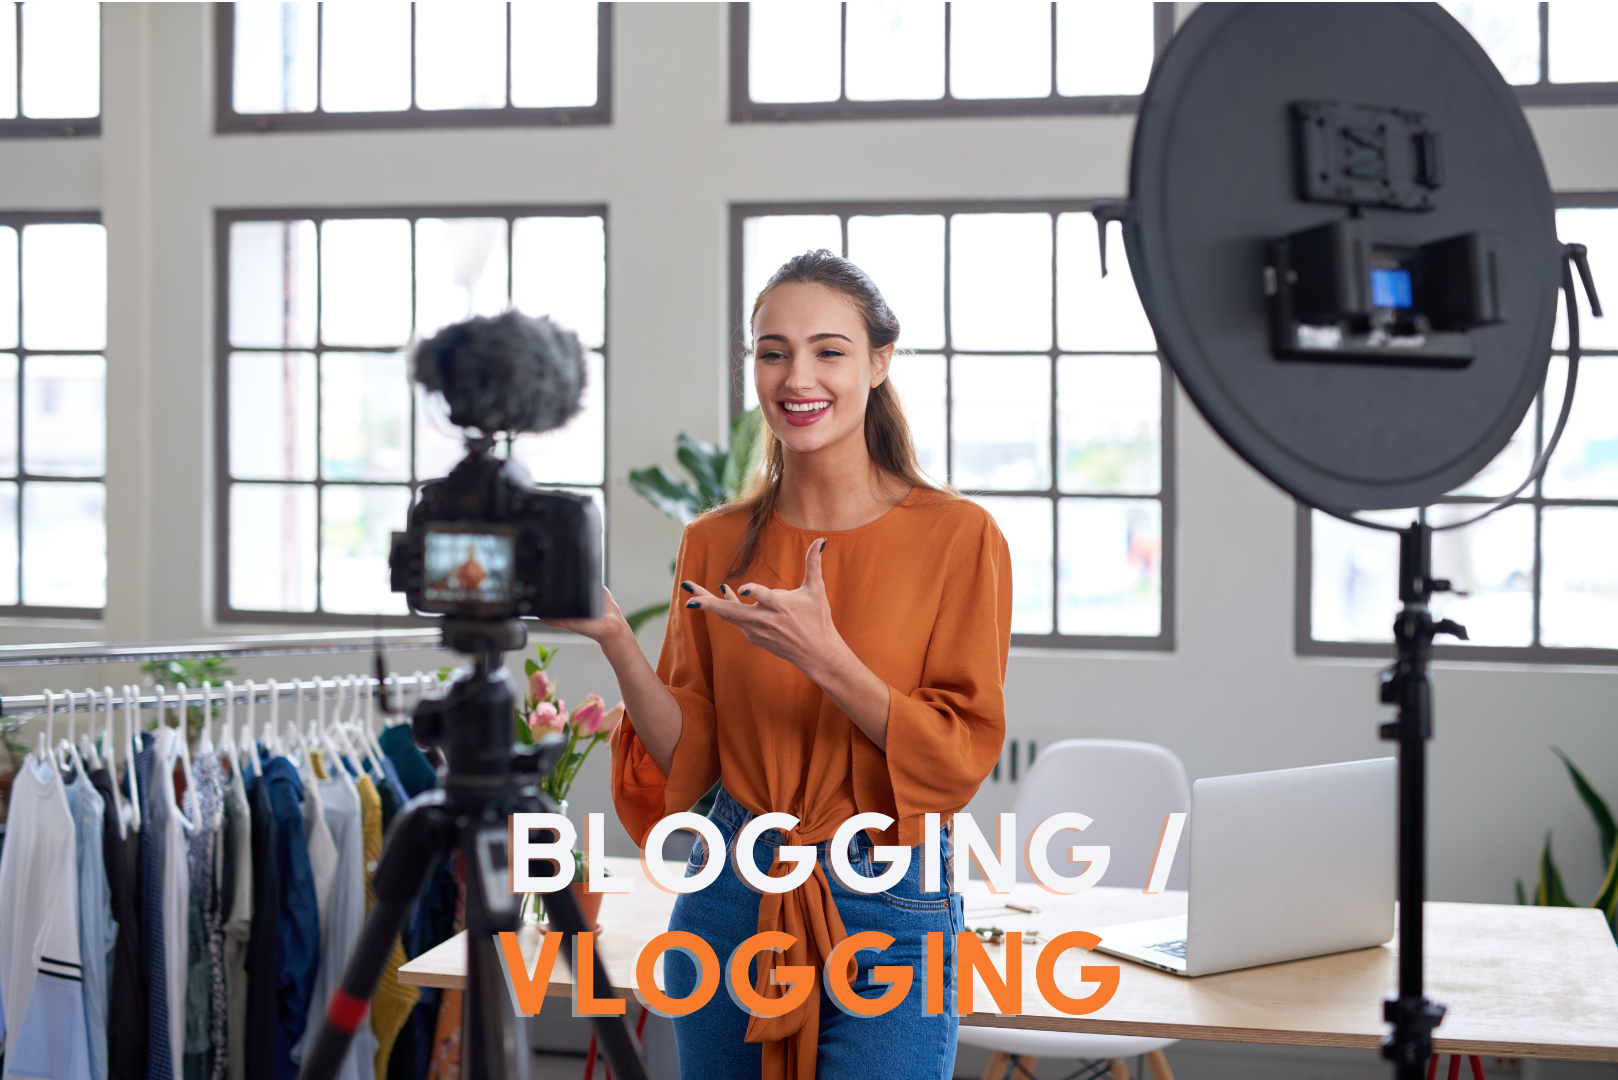 Blogging / Vlogging